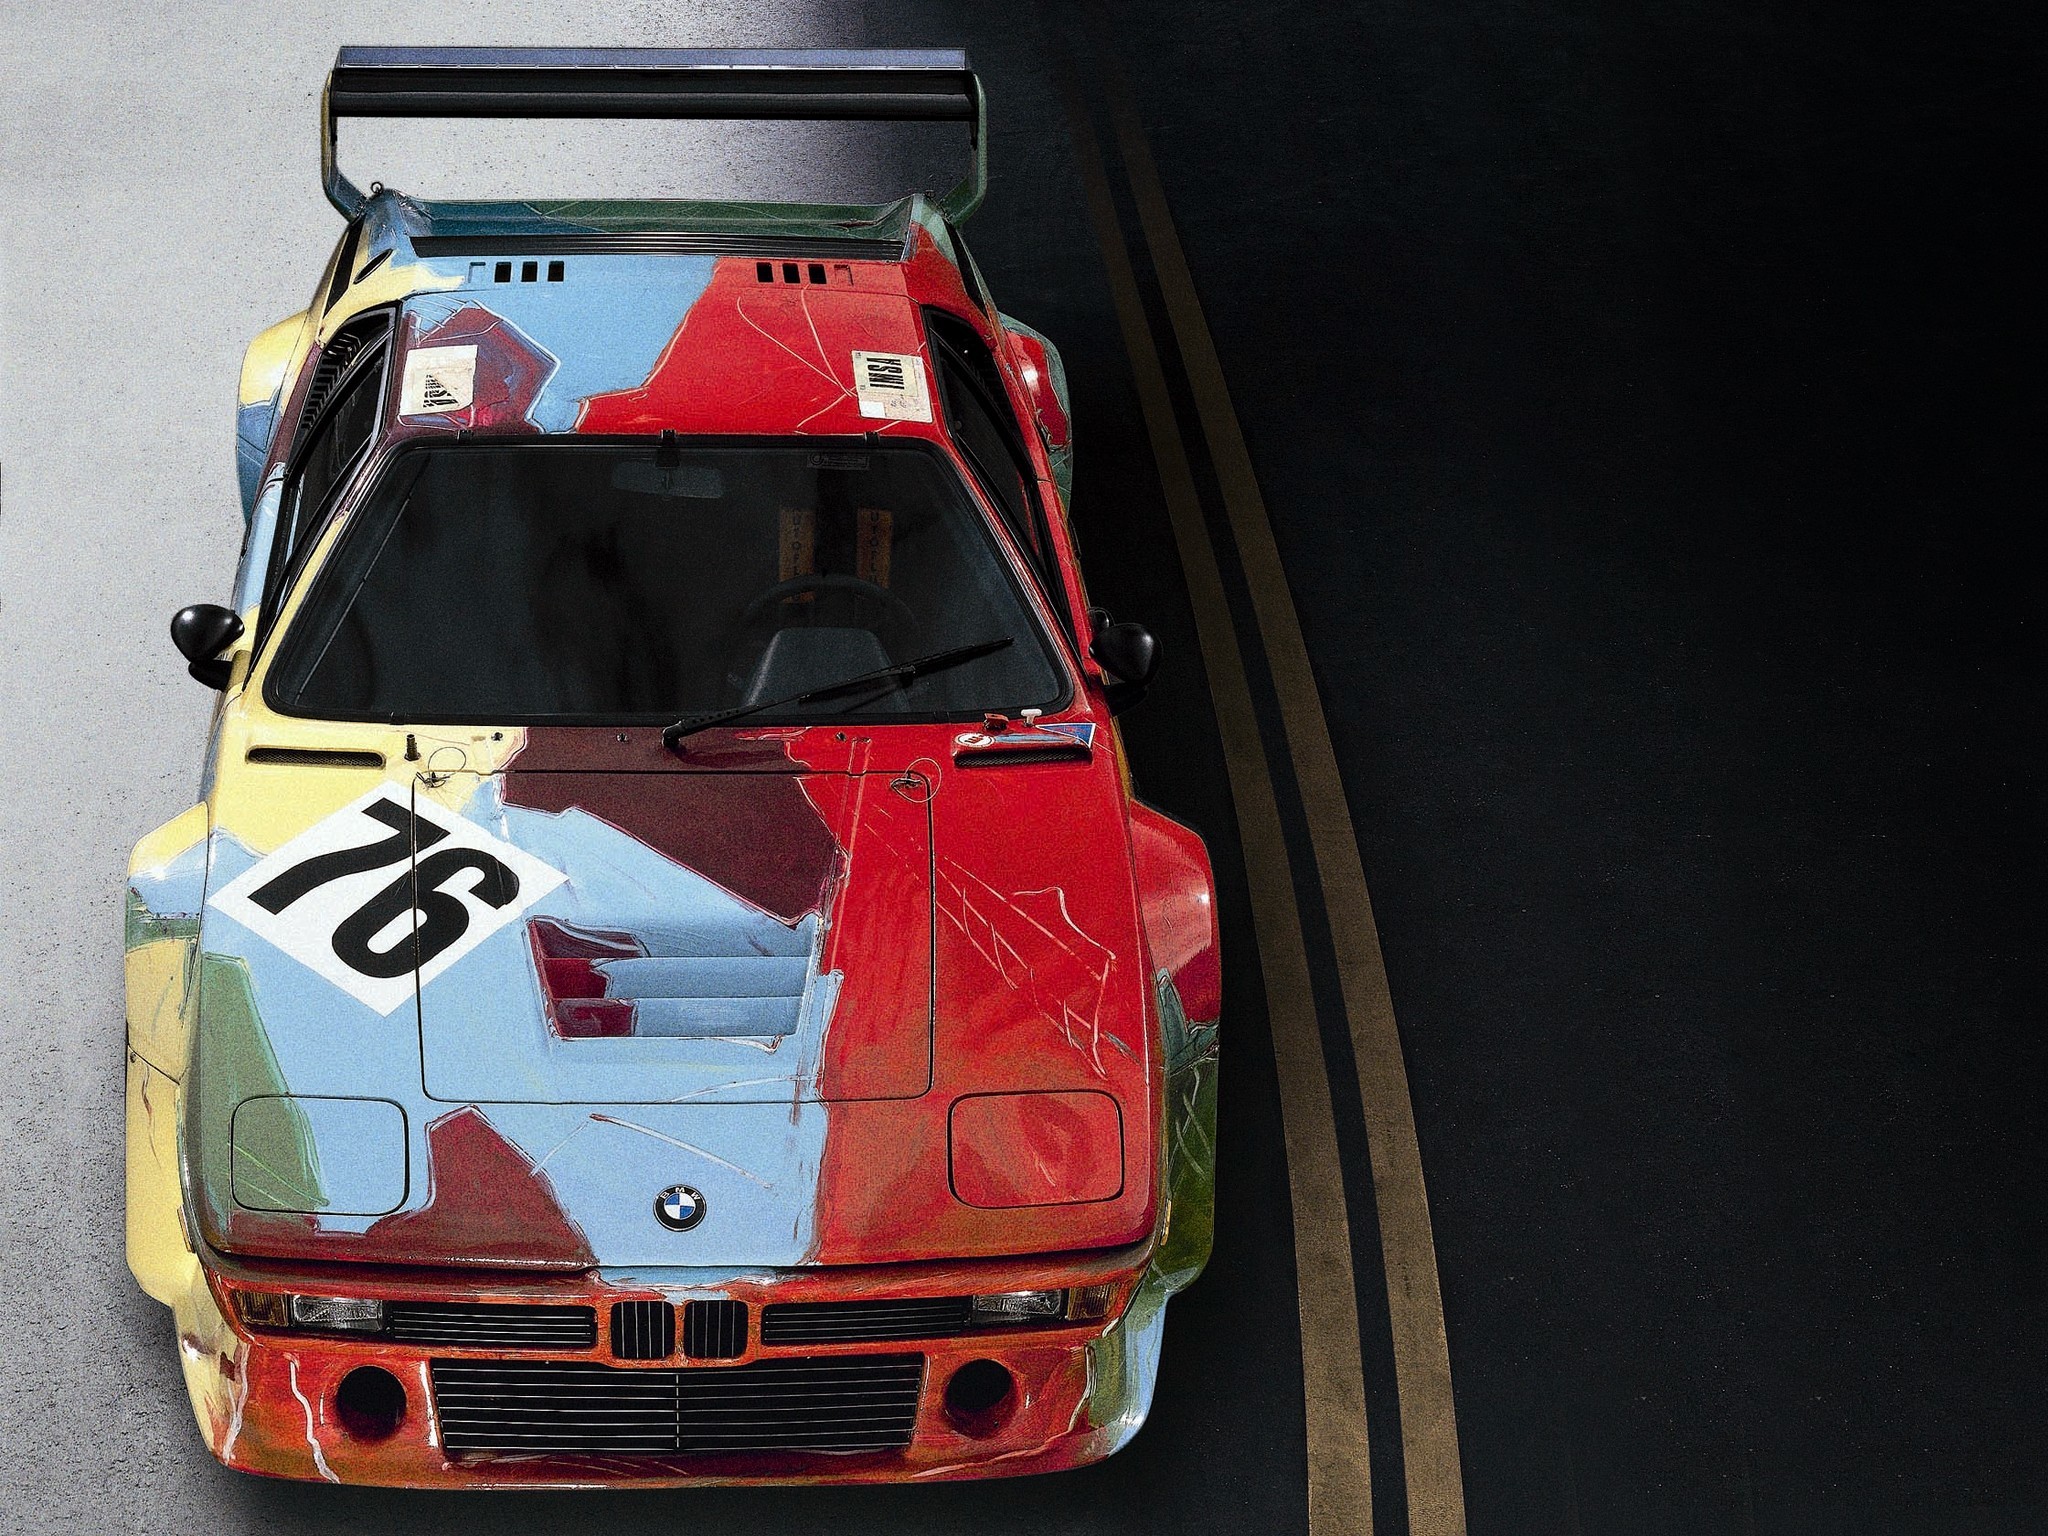 2048x1536 BMW M1 Gruppe 4 Rennversion Art Car by Andy Warhol (5)